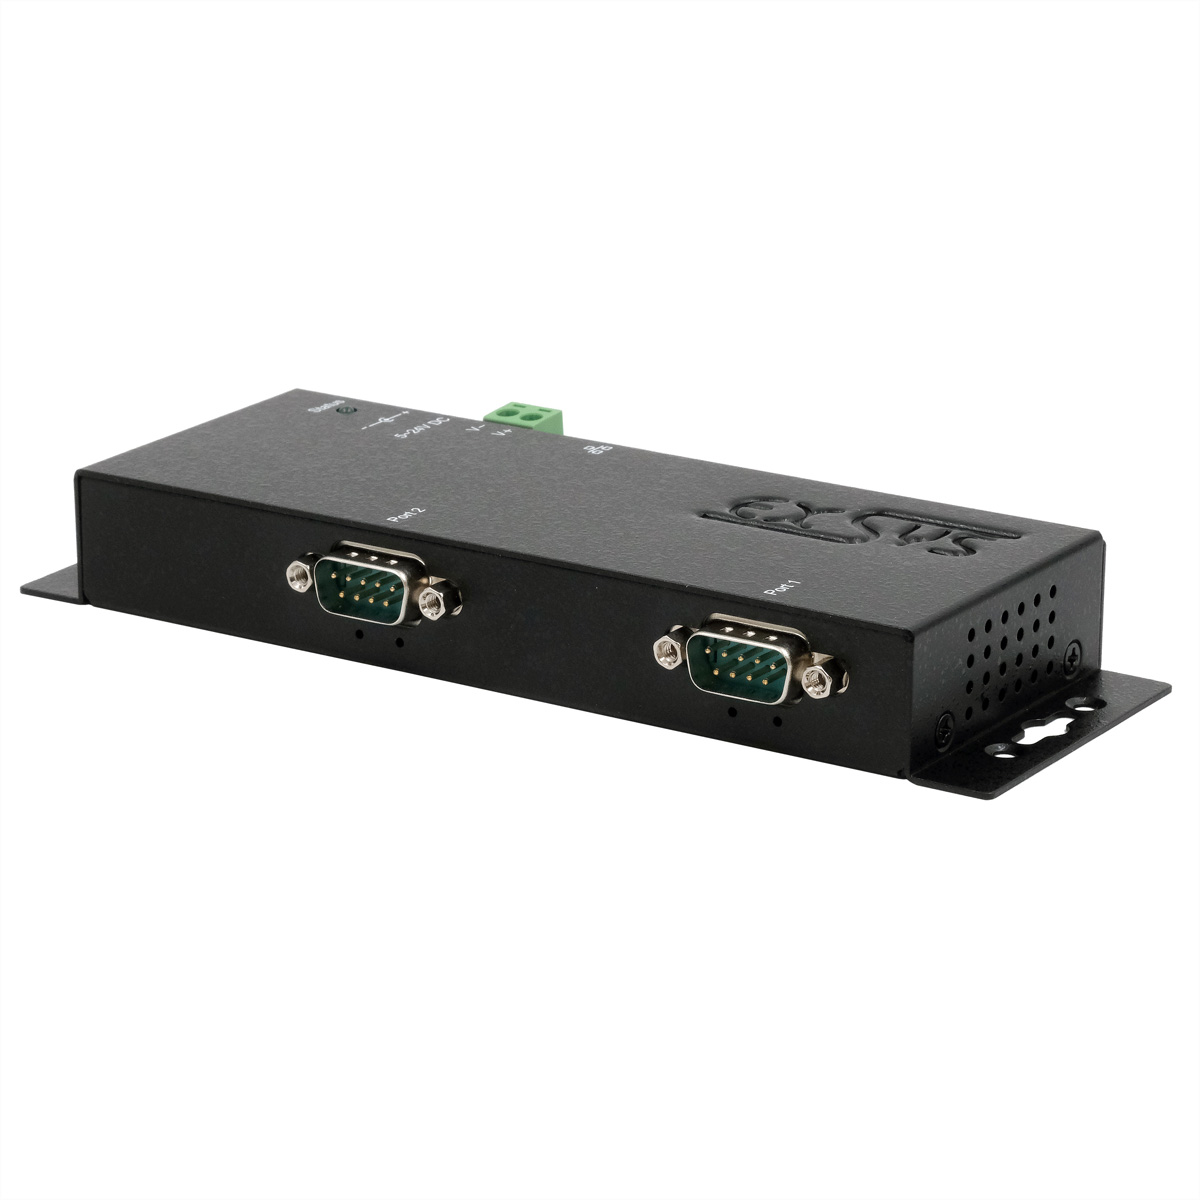 EX-6112-2PoE Ethernet zu Seriell  2 x RS-232 mit 9 Pin Stecker